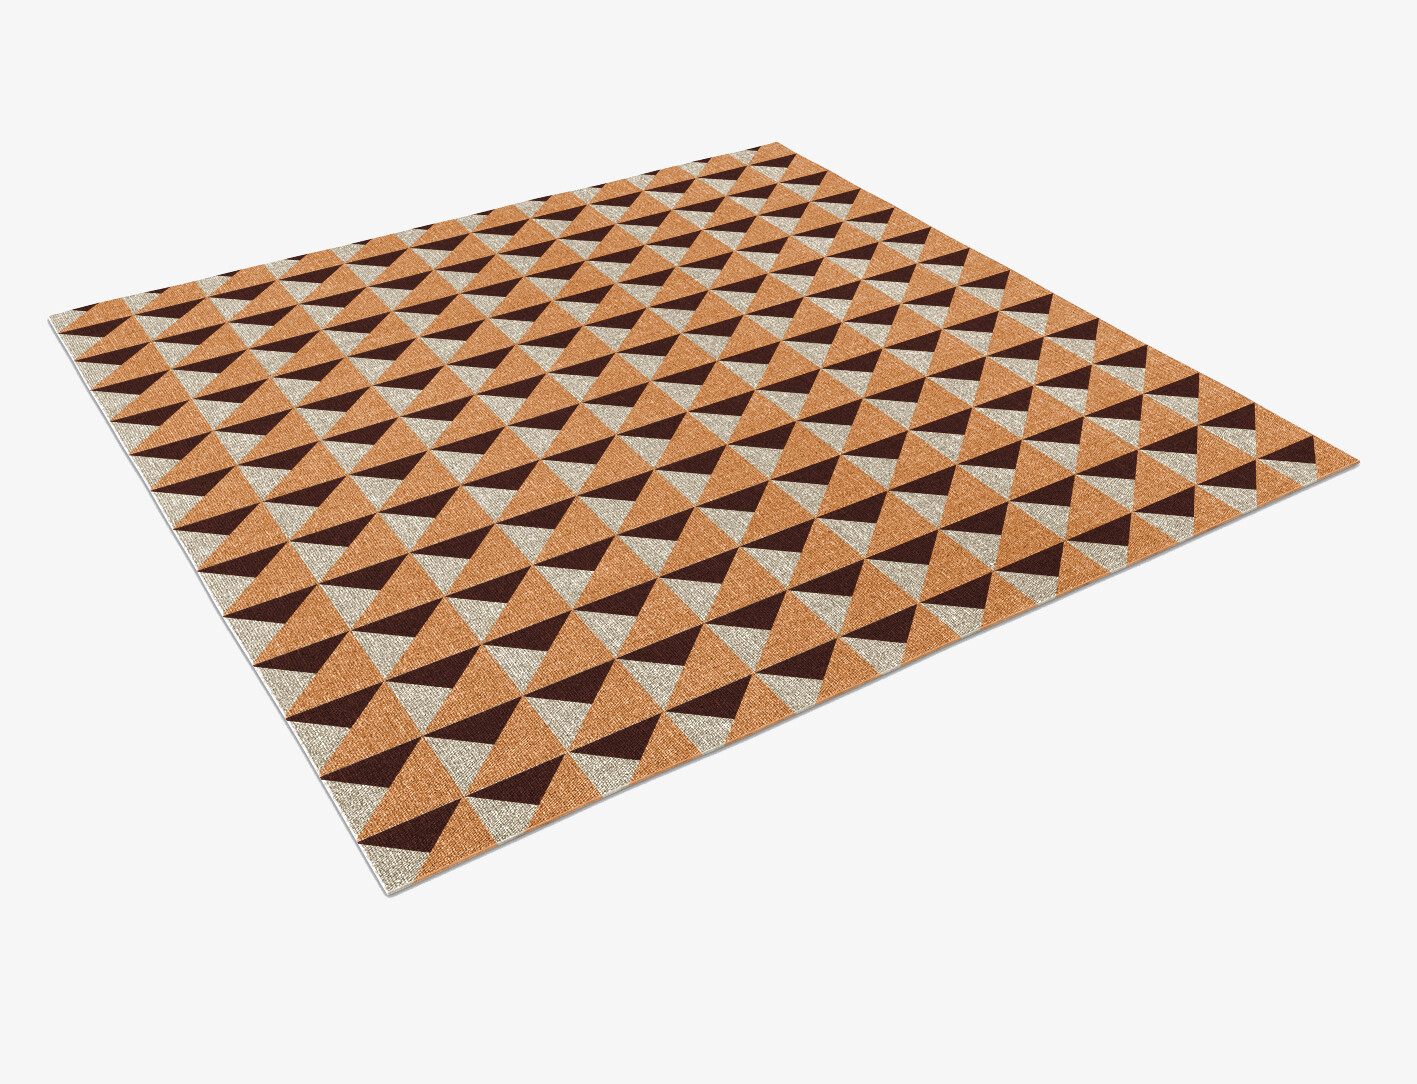 Prism Geometric Square Flatweave New Zealand Wool Custom Rug by Rug Artisan